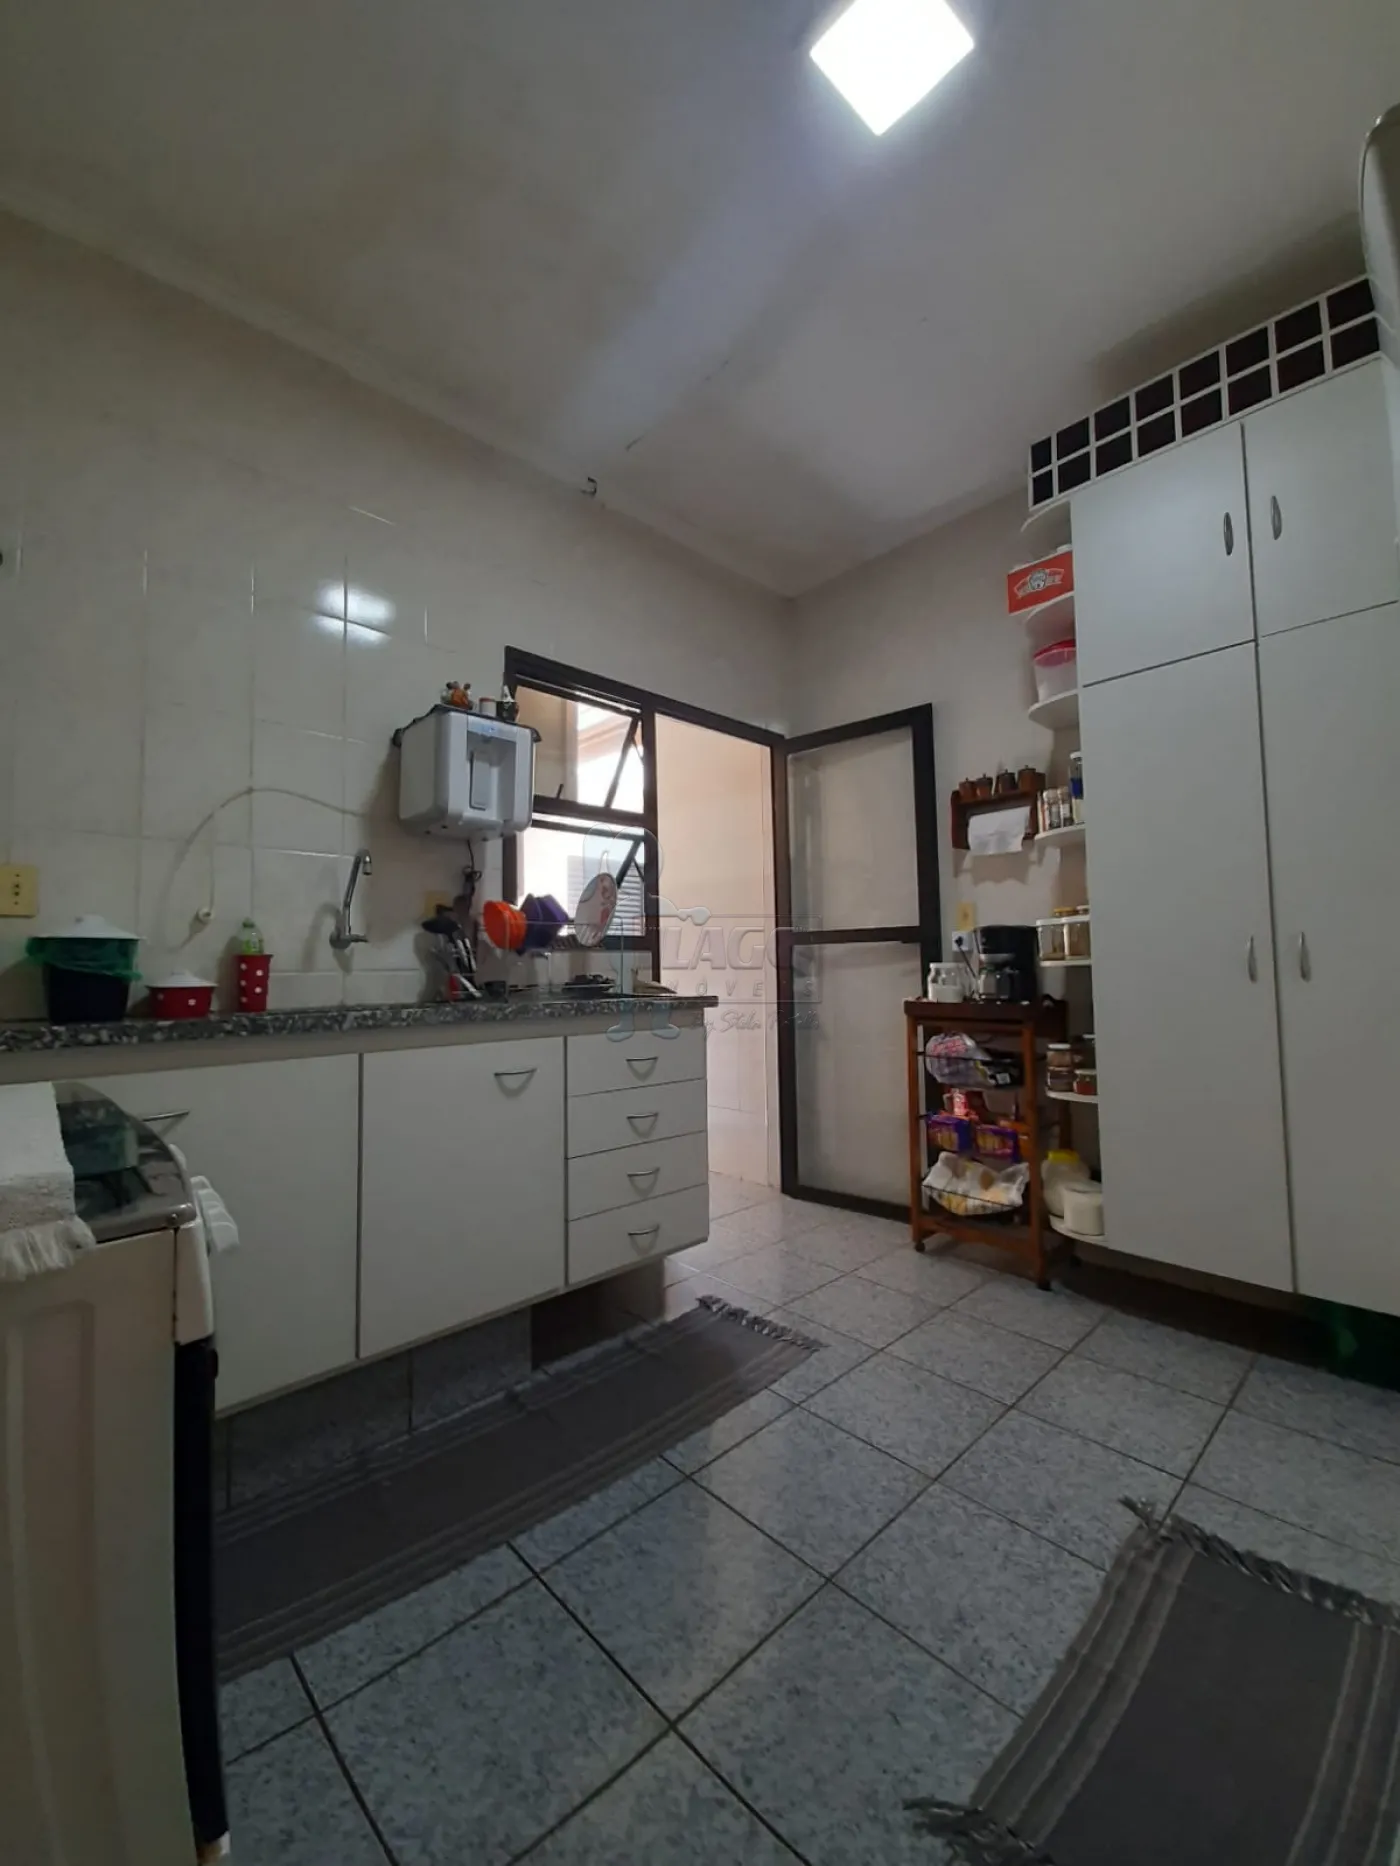 Comprar Apartamento / Padrão em Ribeirão Preto R$ 450.000,00 - Foto 6